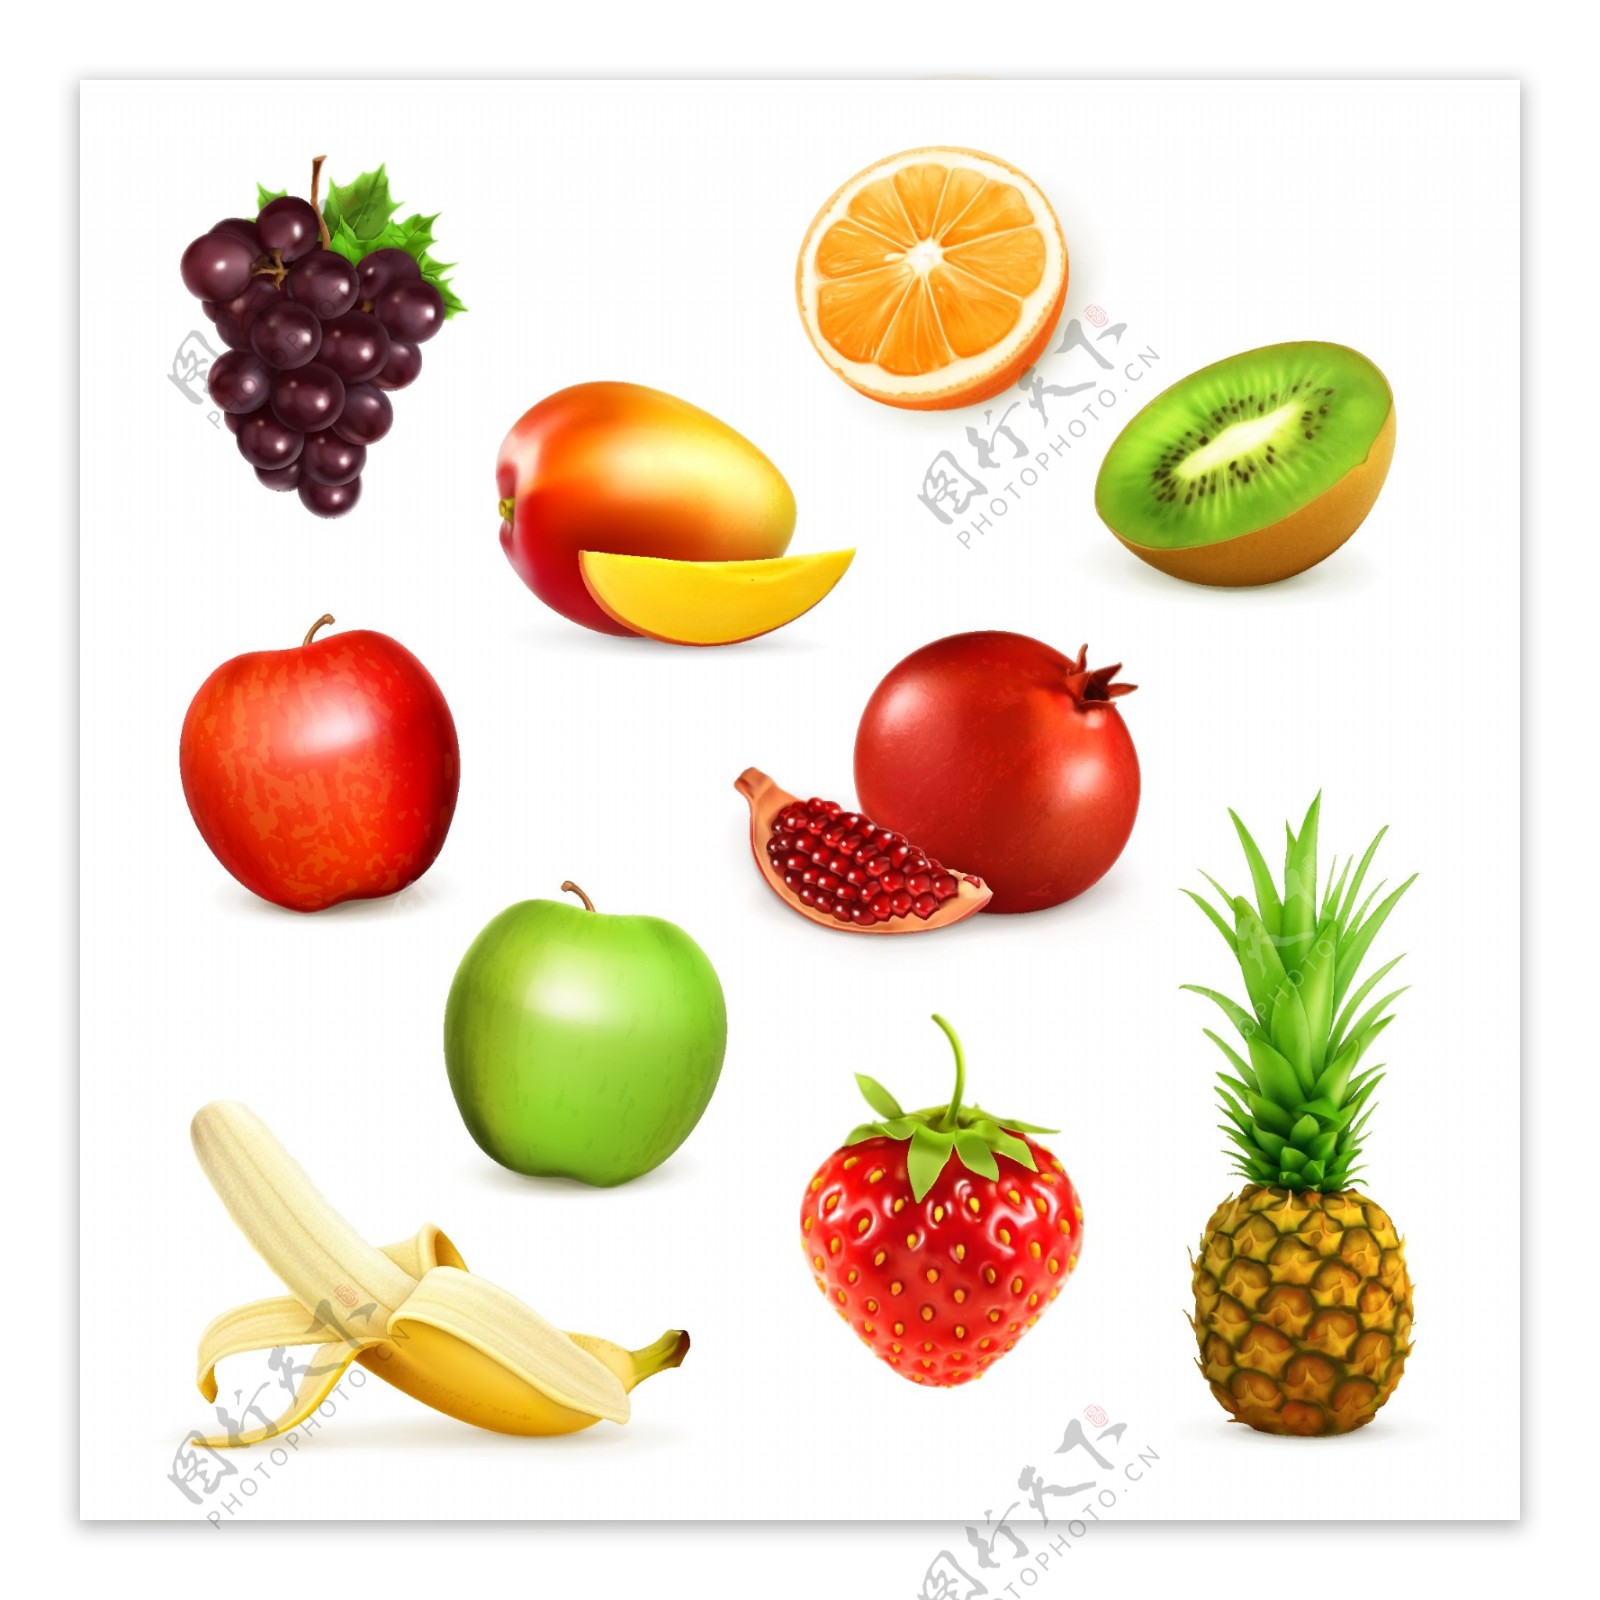 各种美味水果素材图片